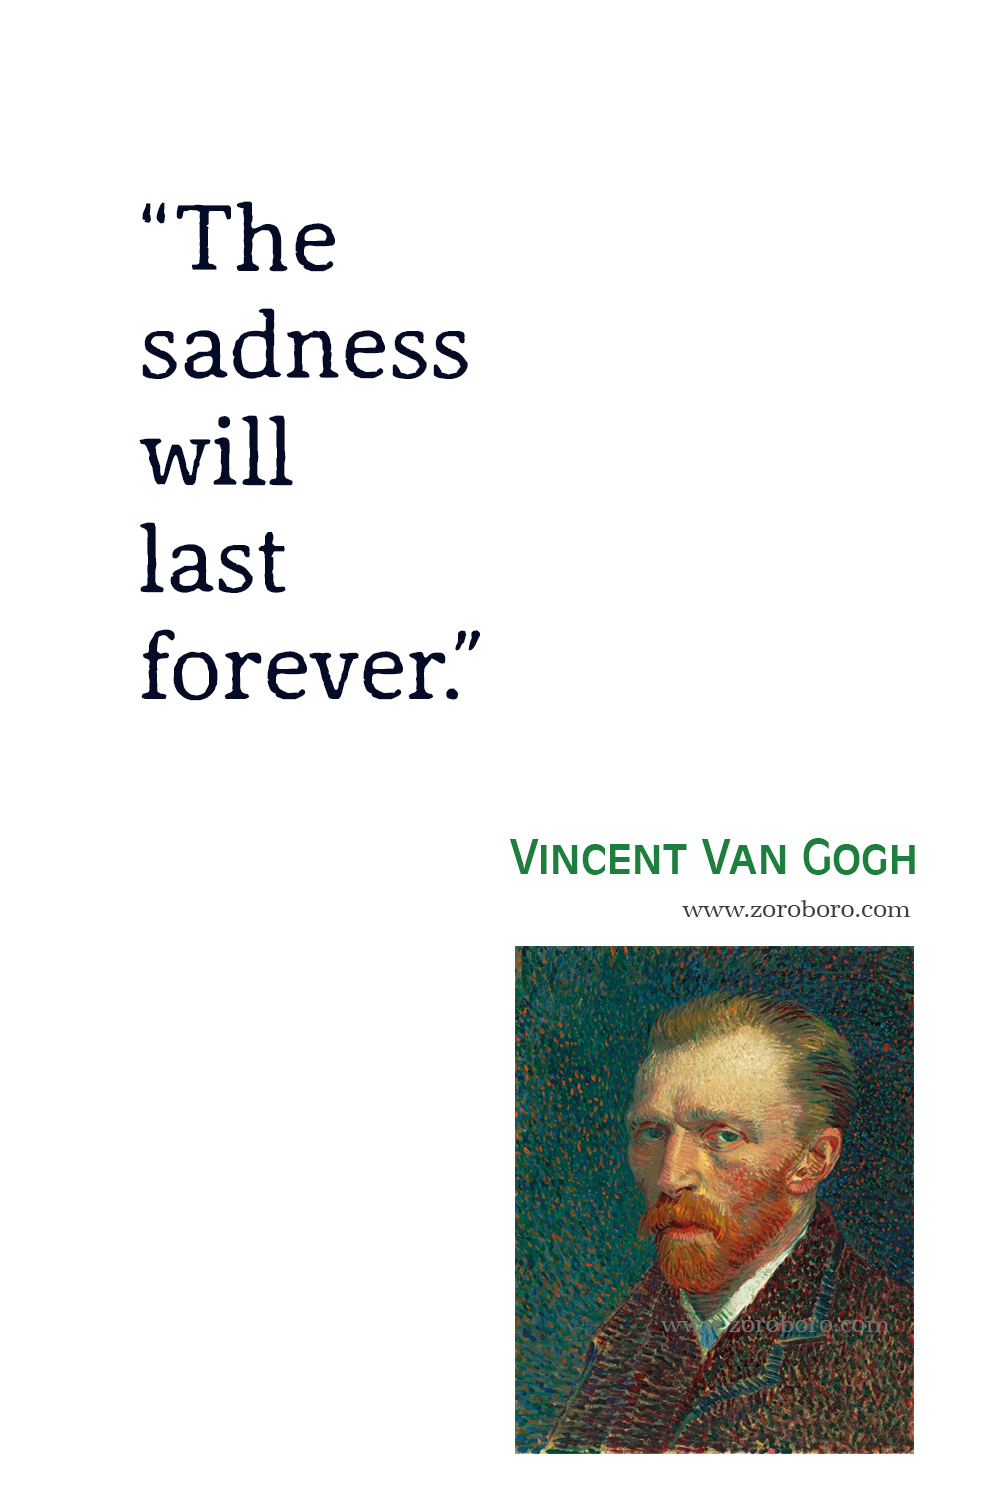 Vincent Van Gogh Quotes,Vincent Van Gogh Art, Dreams, Heart, Vincent Van Gogh Inspirational, Vincent Van Gogh Painting, Vincent Van Gogh Quotes